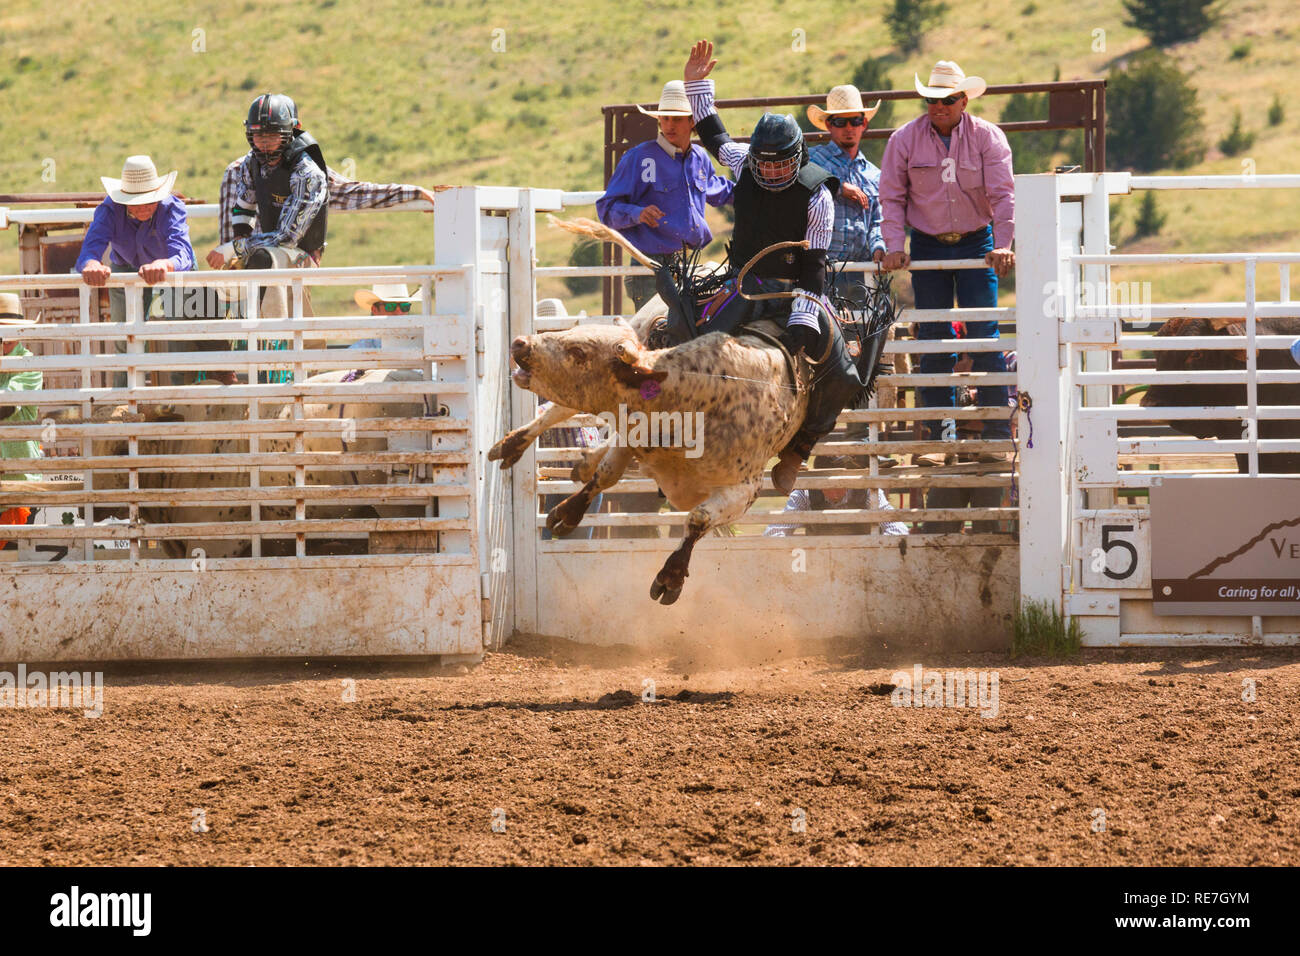 Cowboys et cowgirls en compétition au sommet du monde Rodeo Banque D'Images